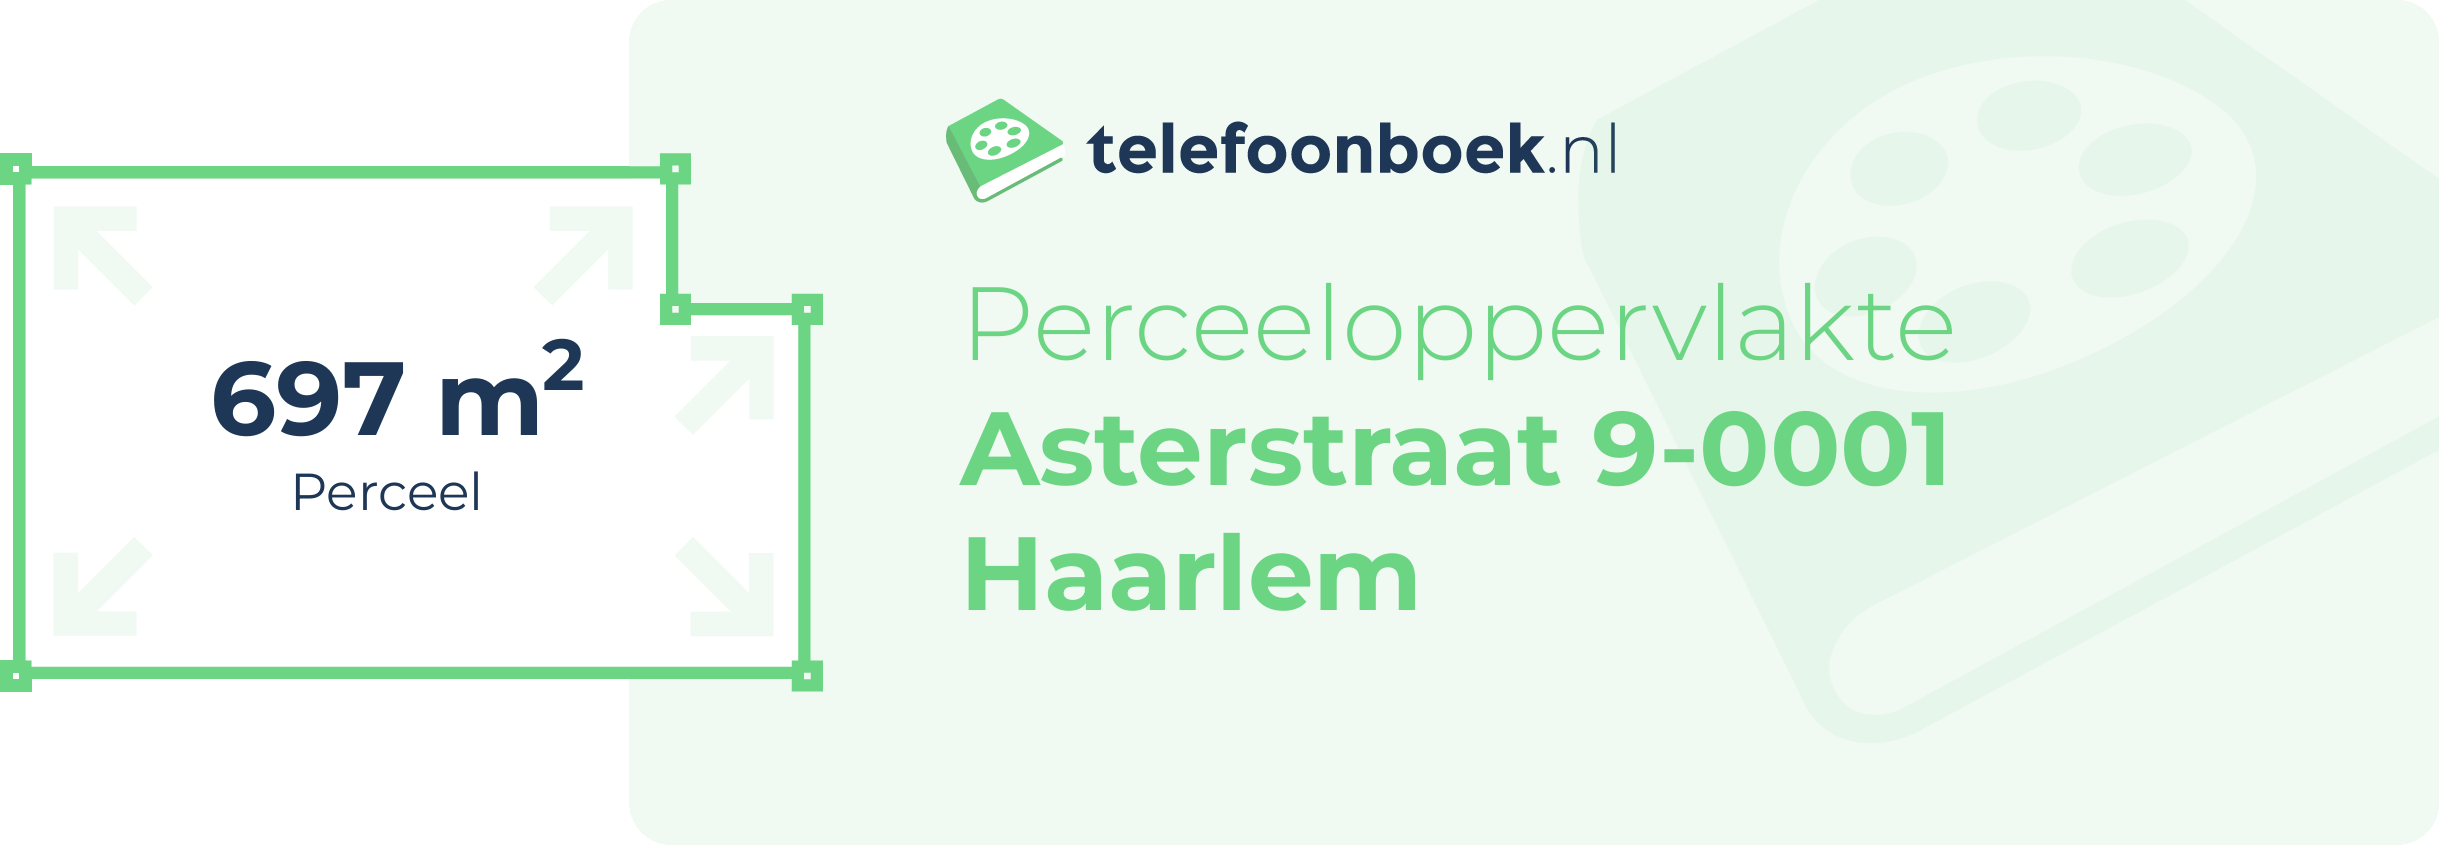 Perceeloppervlakte Asterstraat 9-0001 Haarlem